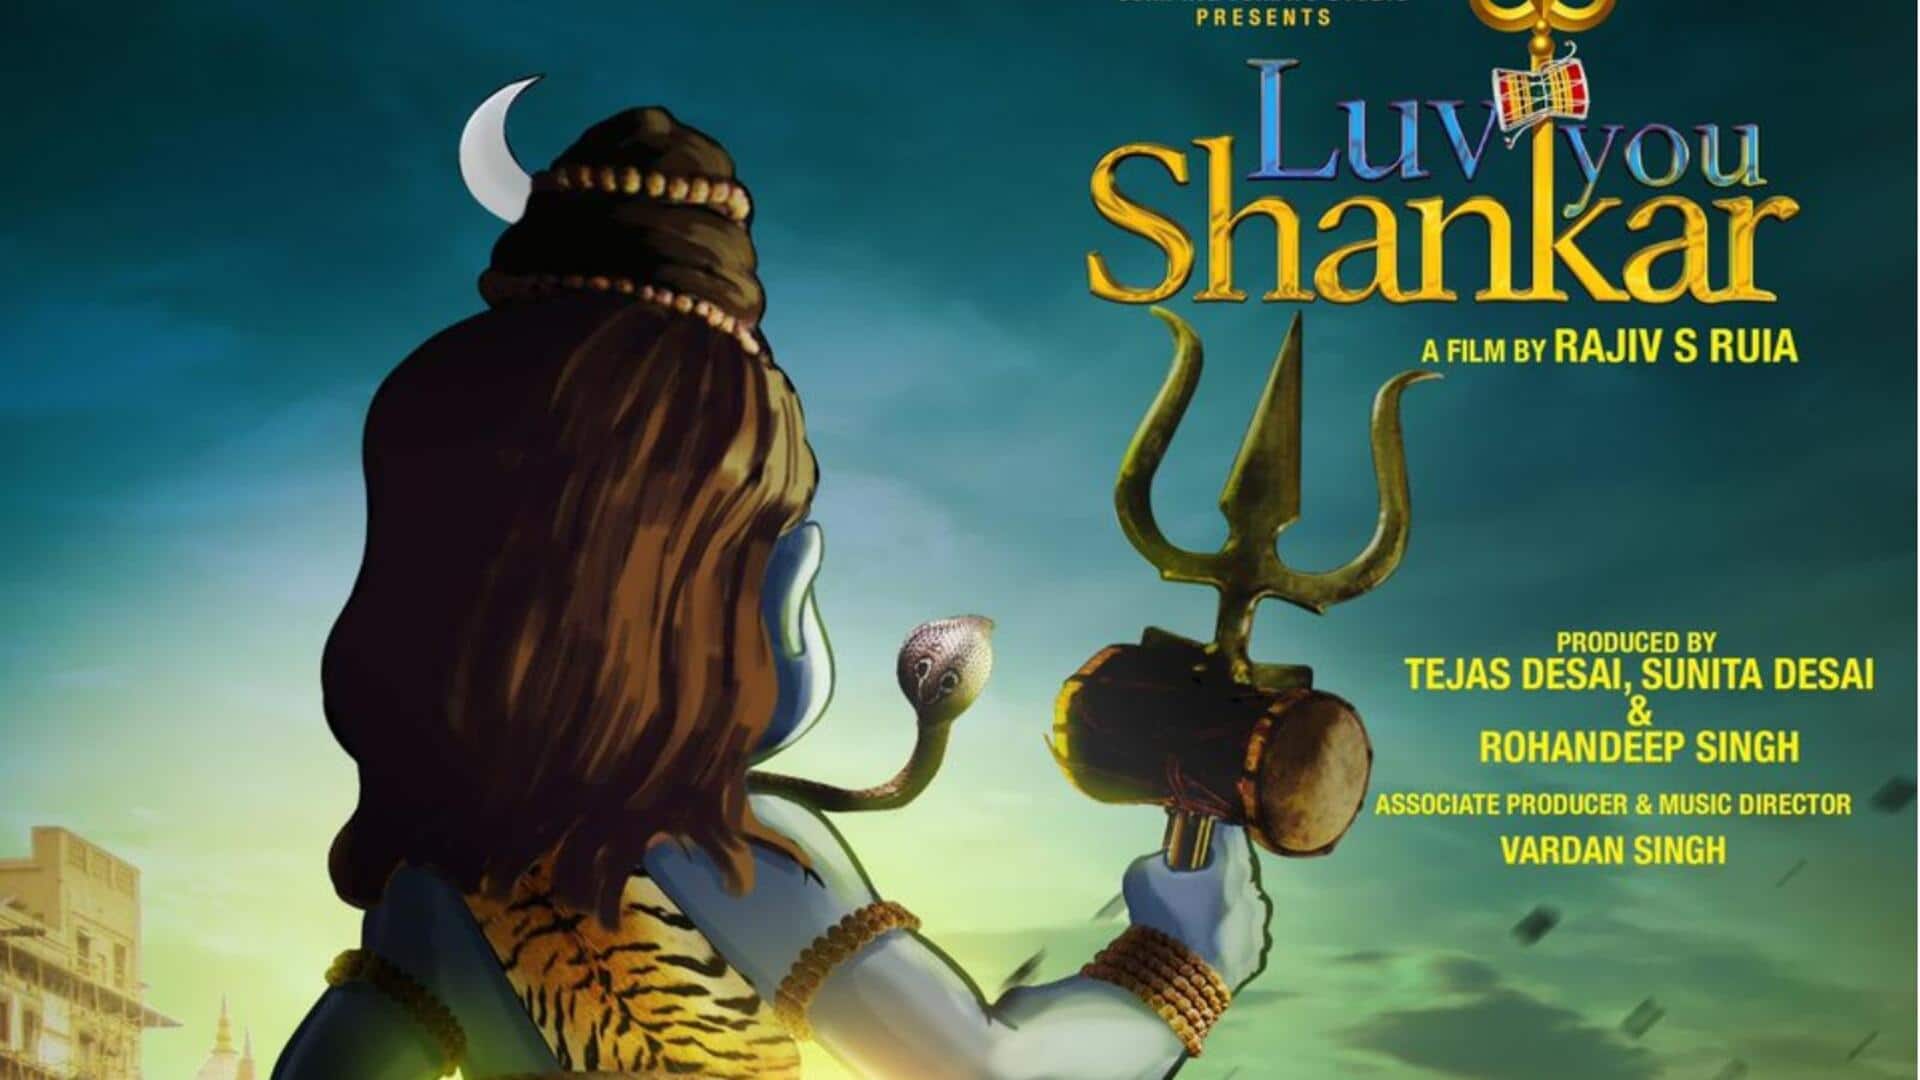 श्रेयस तलपड़े की 'लव यू शंकर' का ट्रेलर जारी, हिंदी समेत इन भाषाओं में होगी रिलीज 